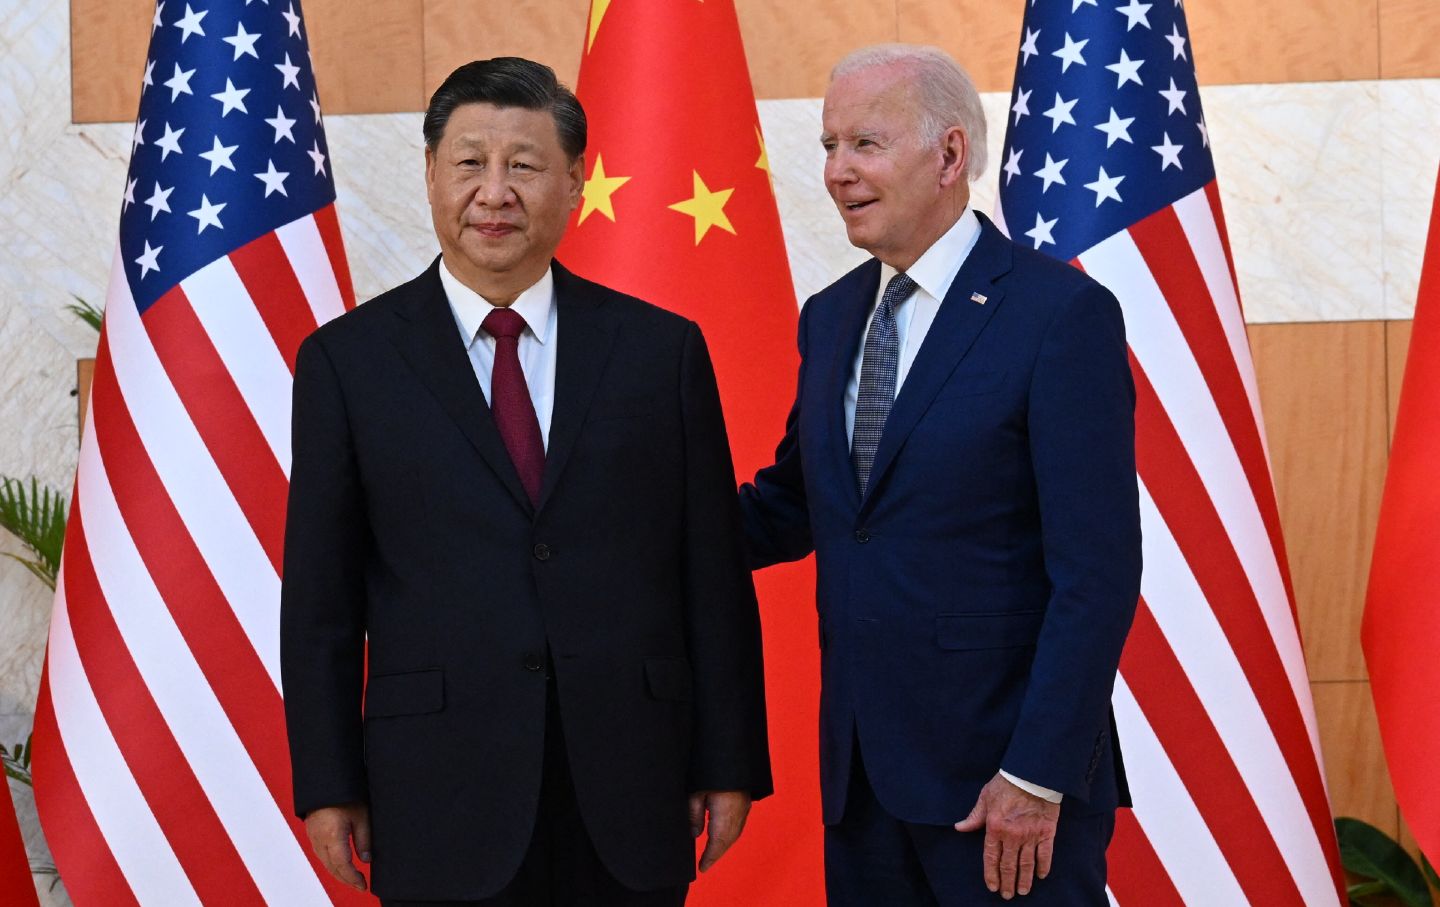 Biden and Xi shaking hands